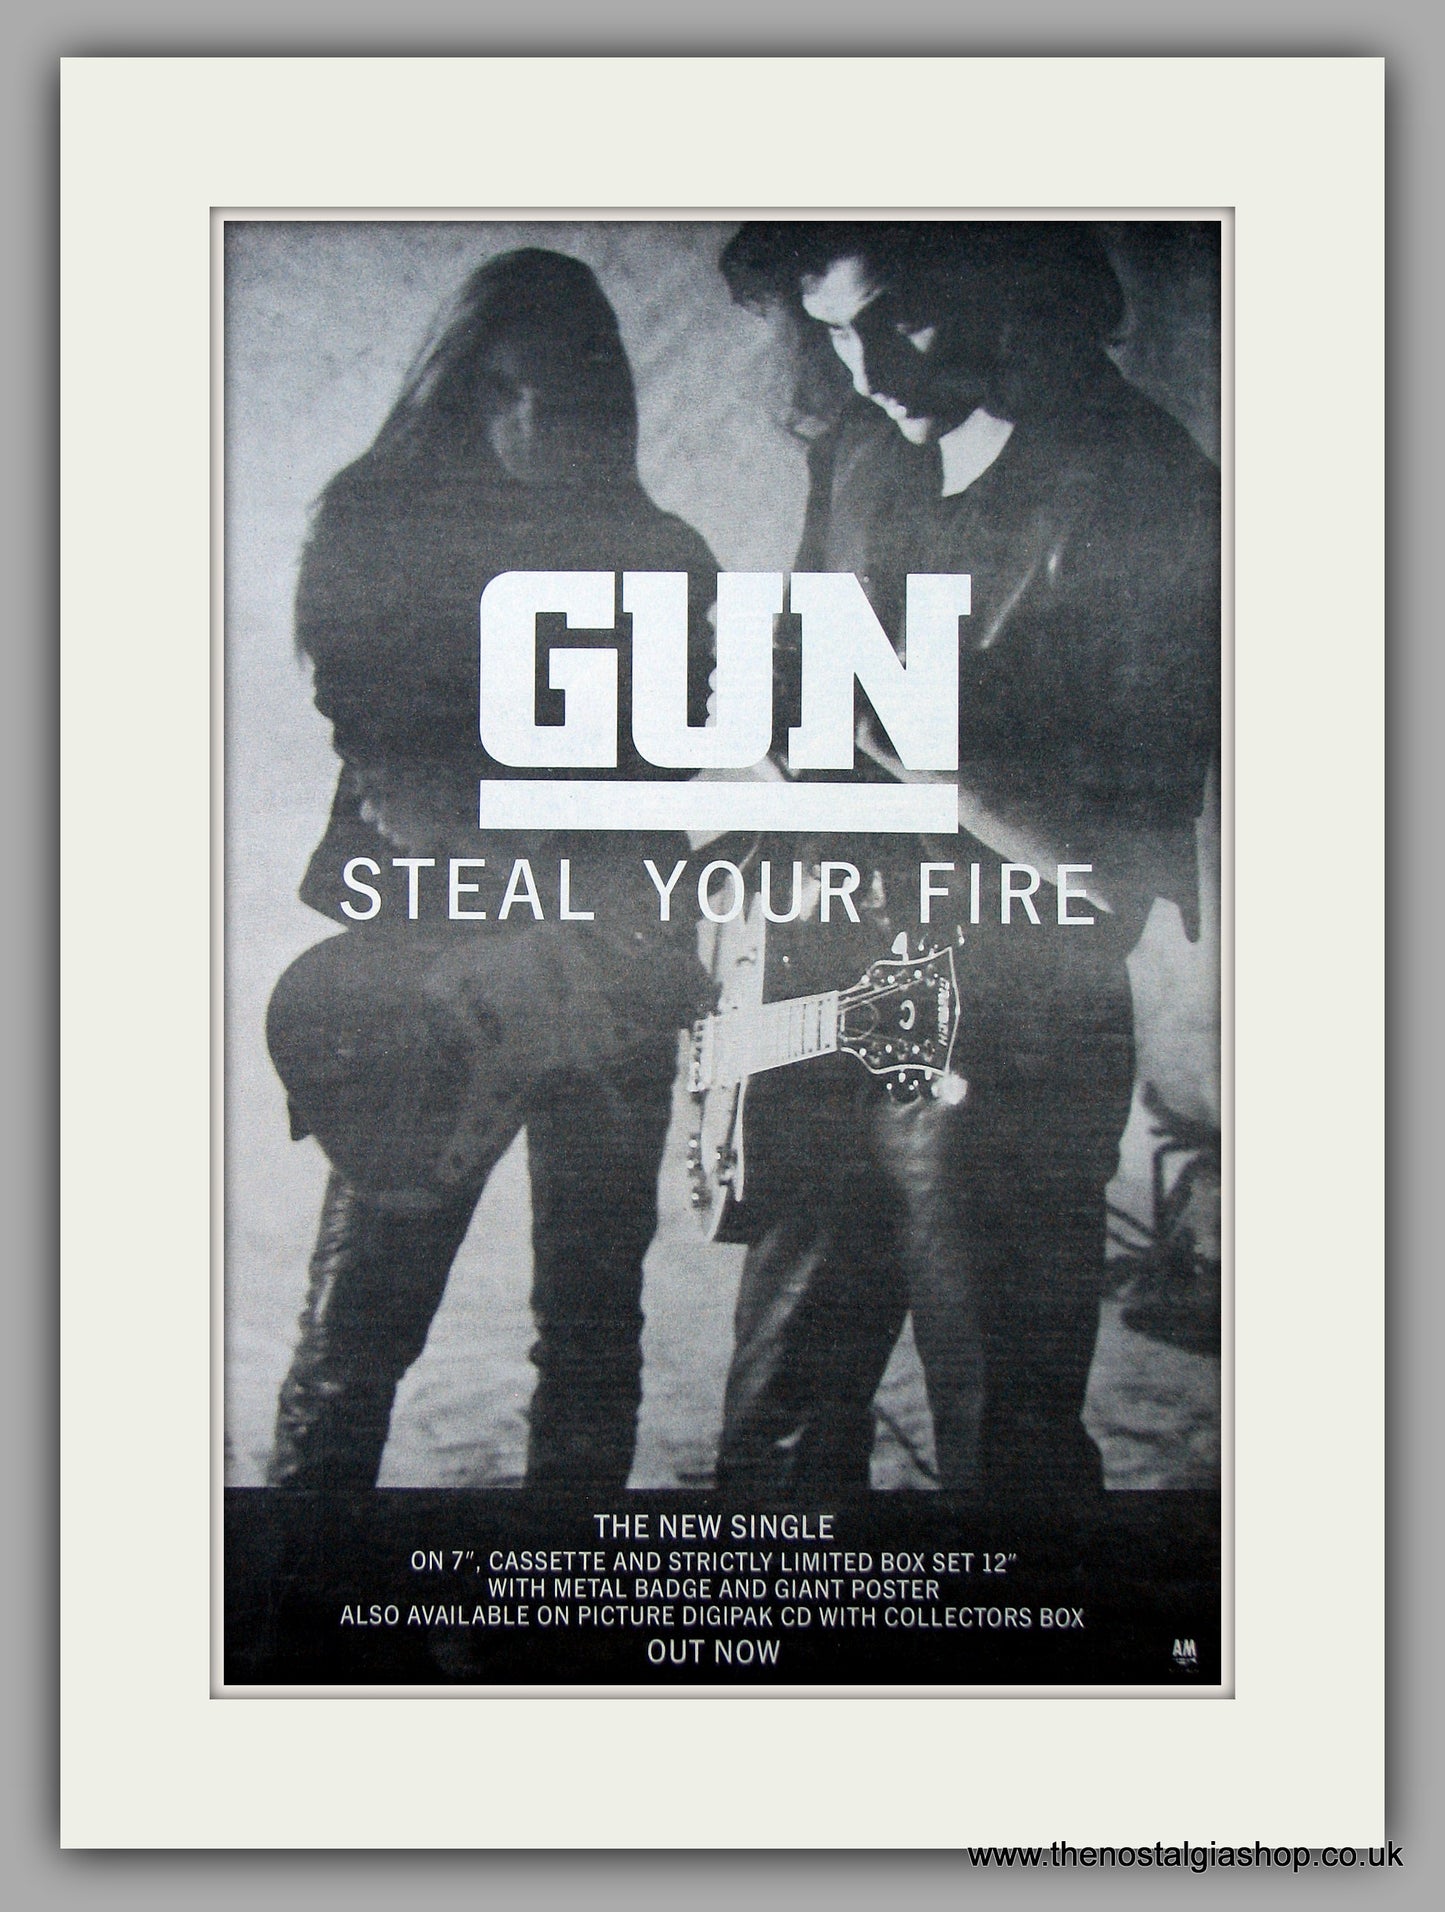 Gun - Steal Your Fire. Original Vintage Advert 1992 (ref AD10806)